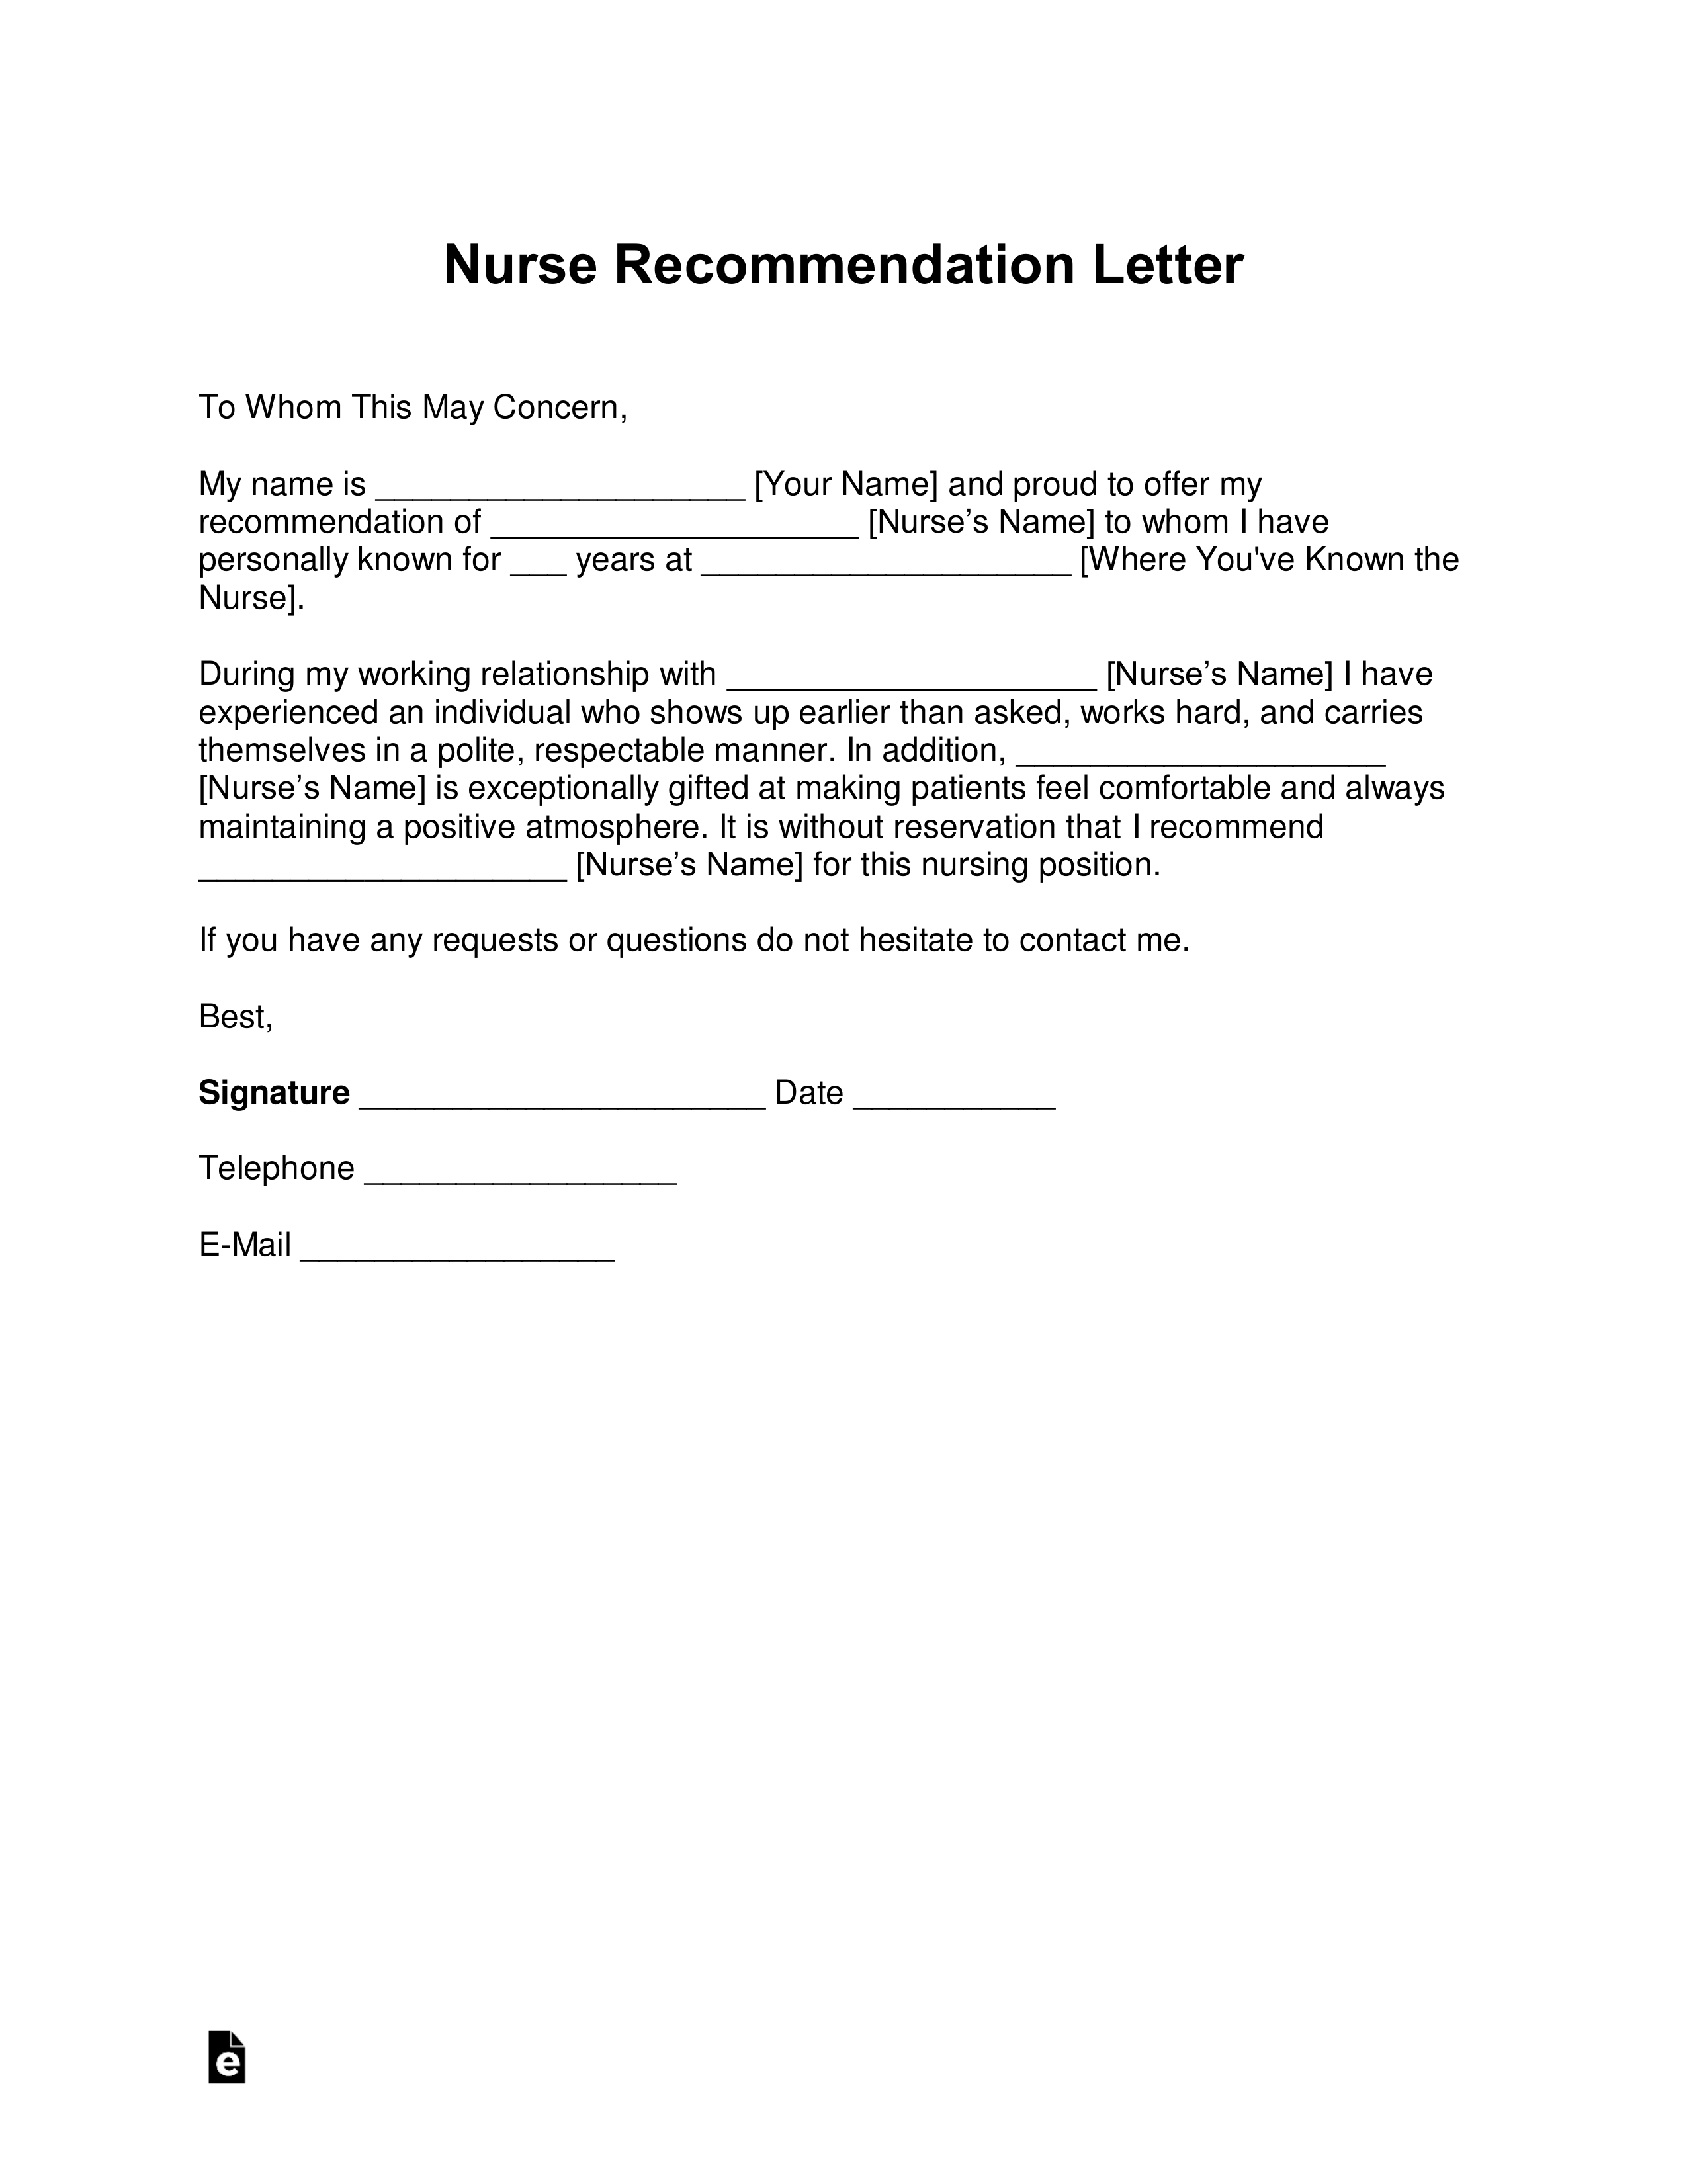 Sample Registered Nurse Resignation Letter from eforms.com